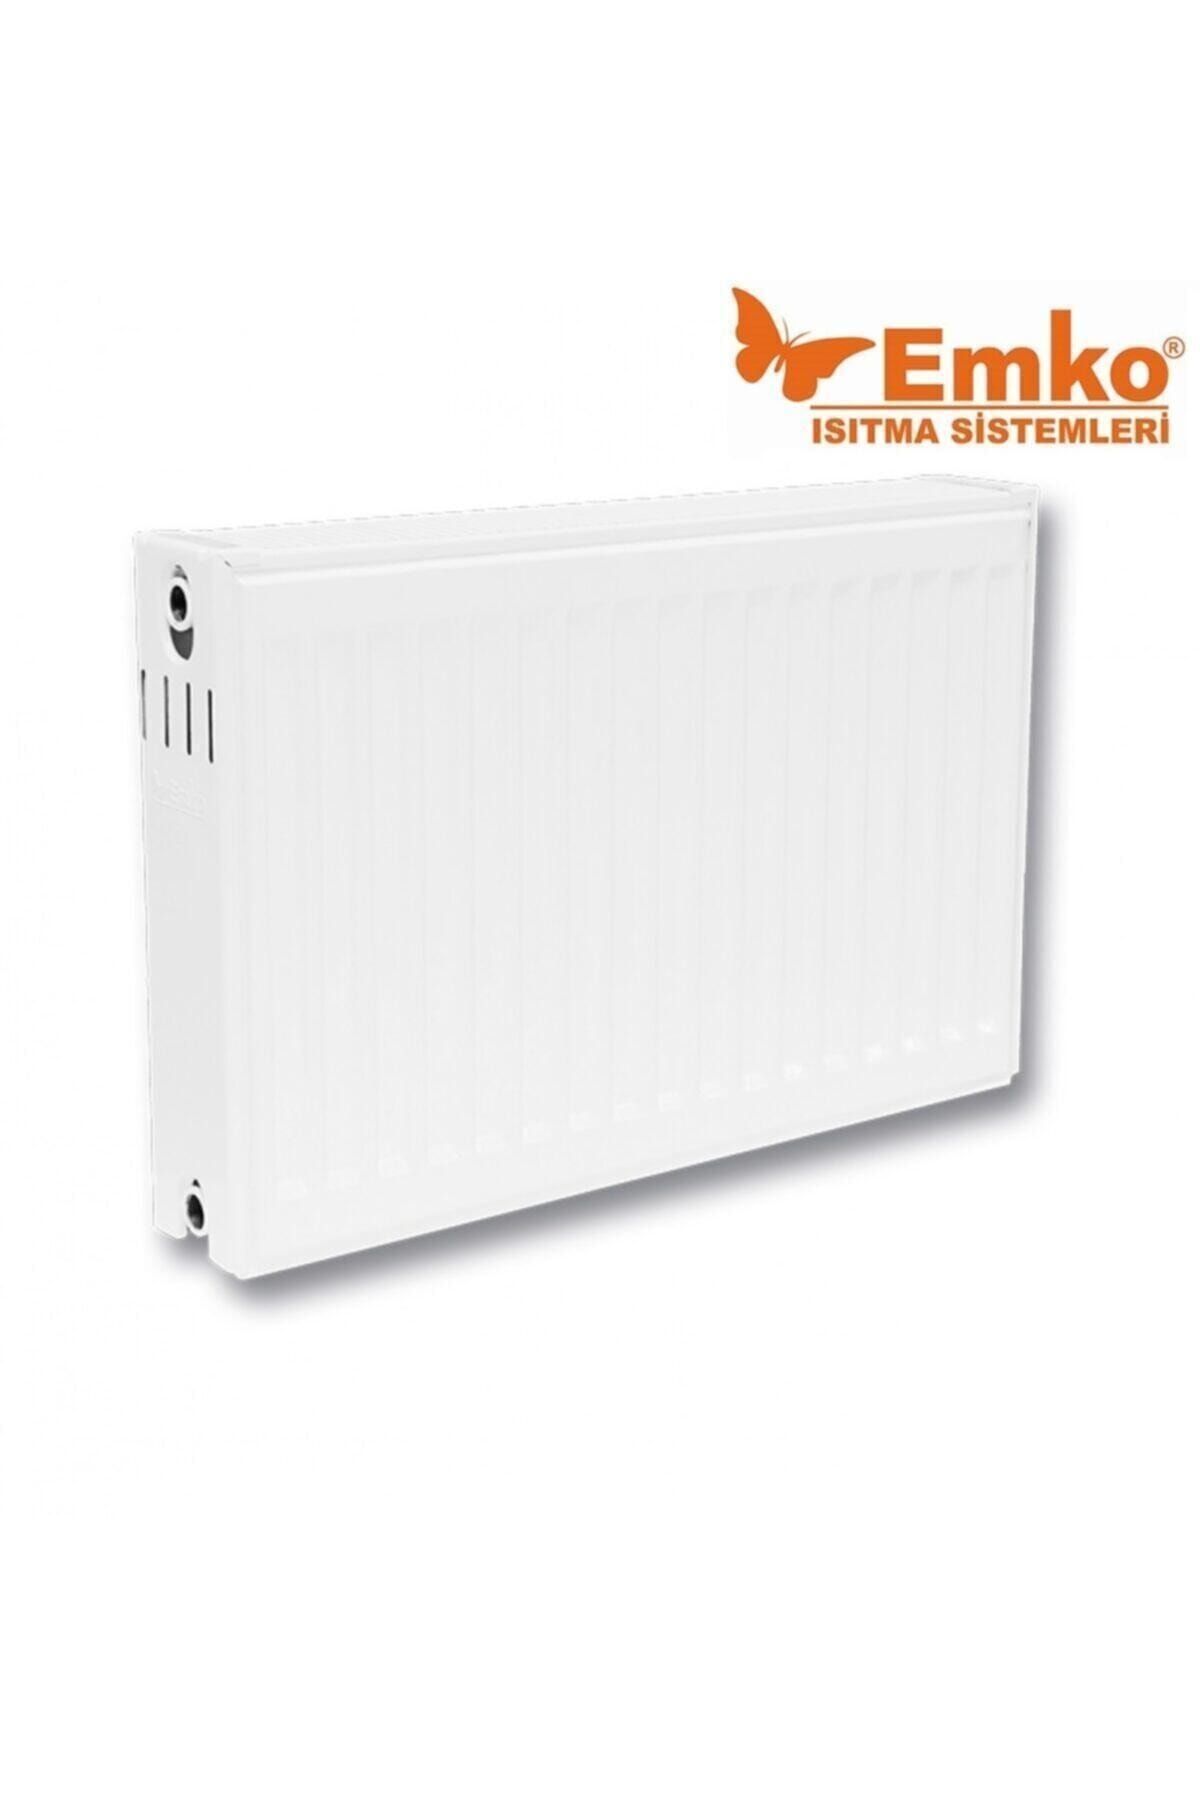 Emko 600x1100 Panel Radyatör 600x1100 Panel Radyatör